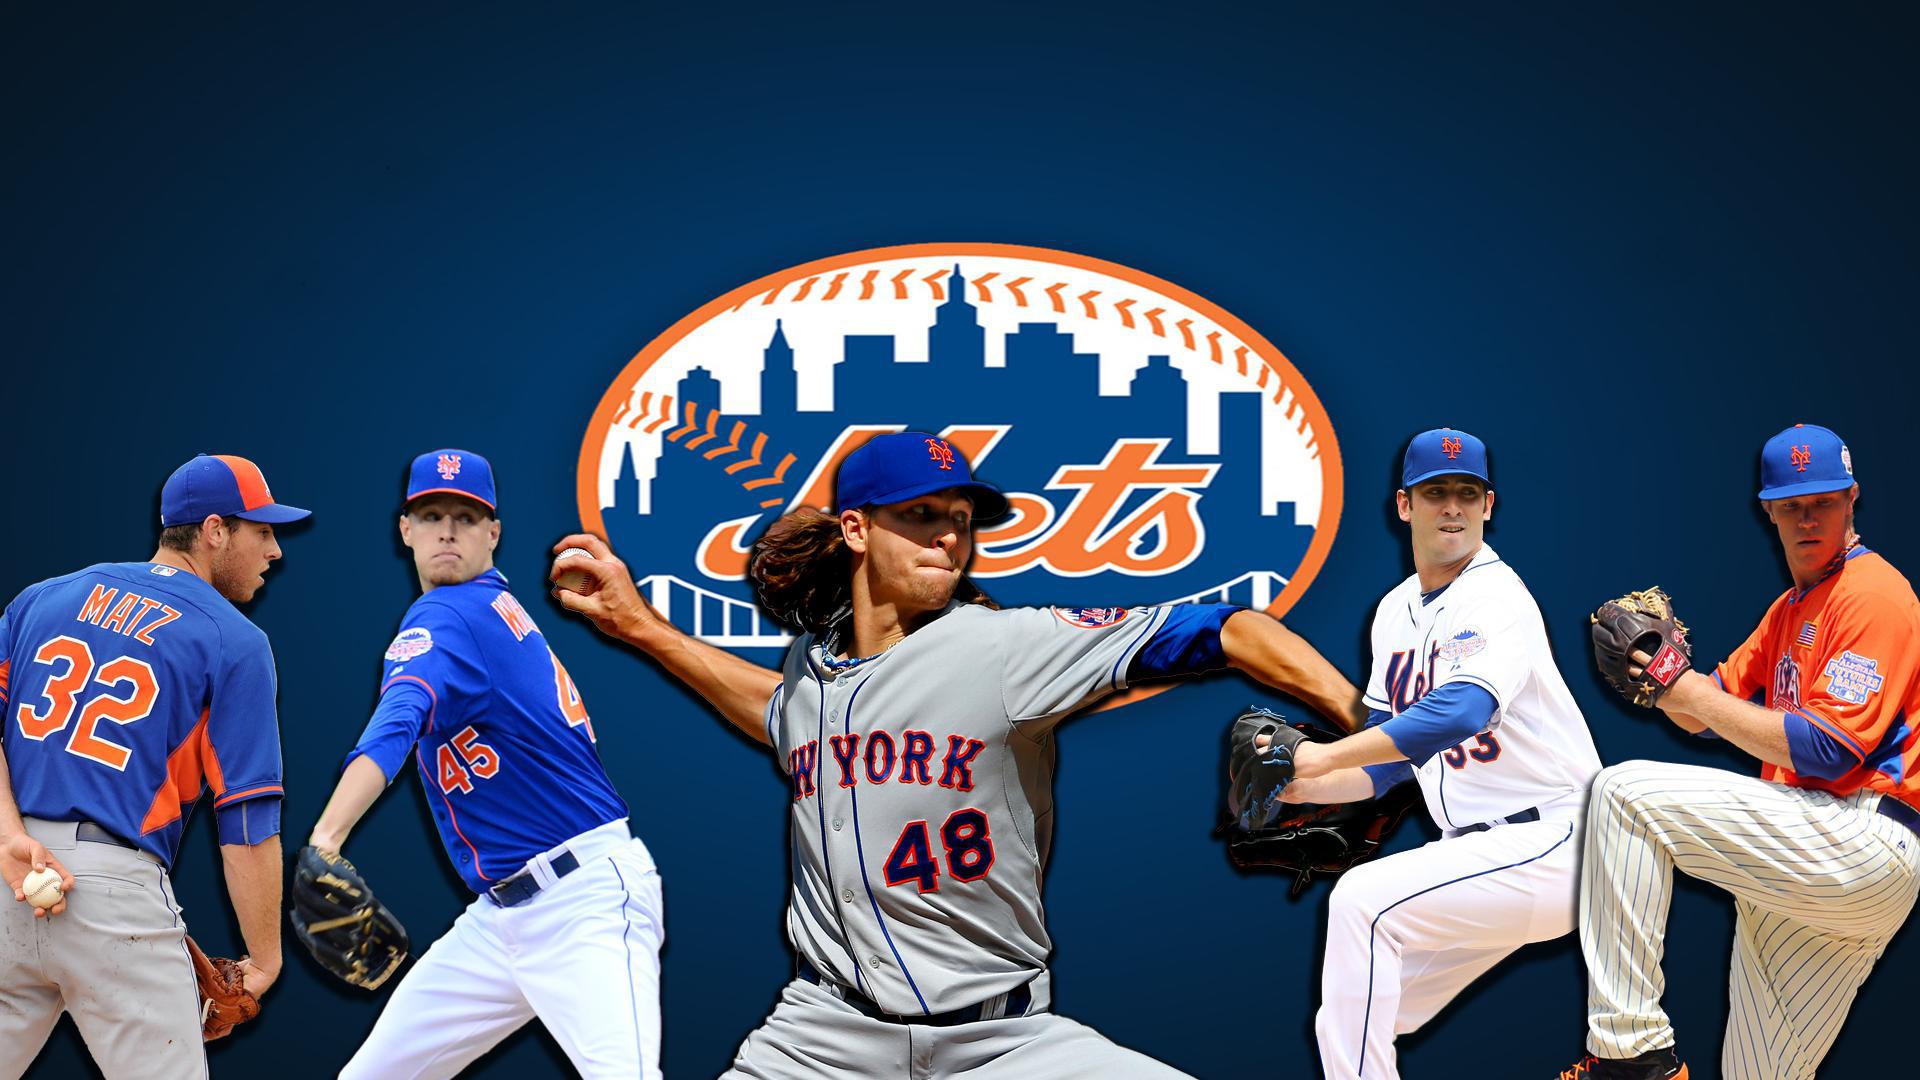 fond d'écran new york mets,uniforme de baseball,baseball universitaire,base ball,joueur de baseball,équipe